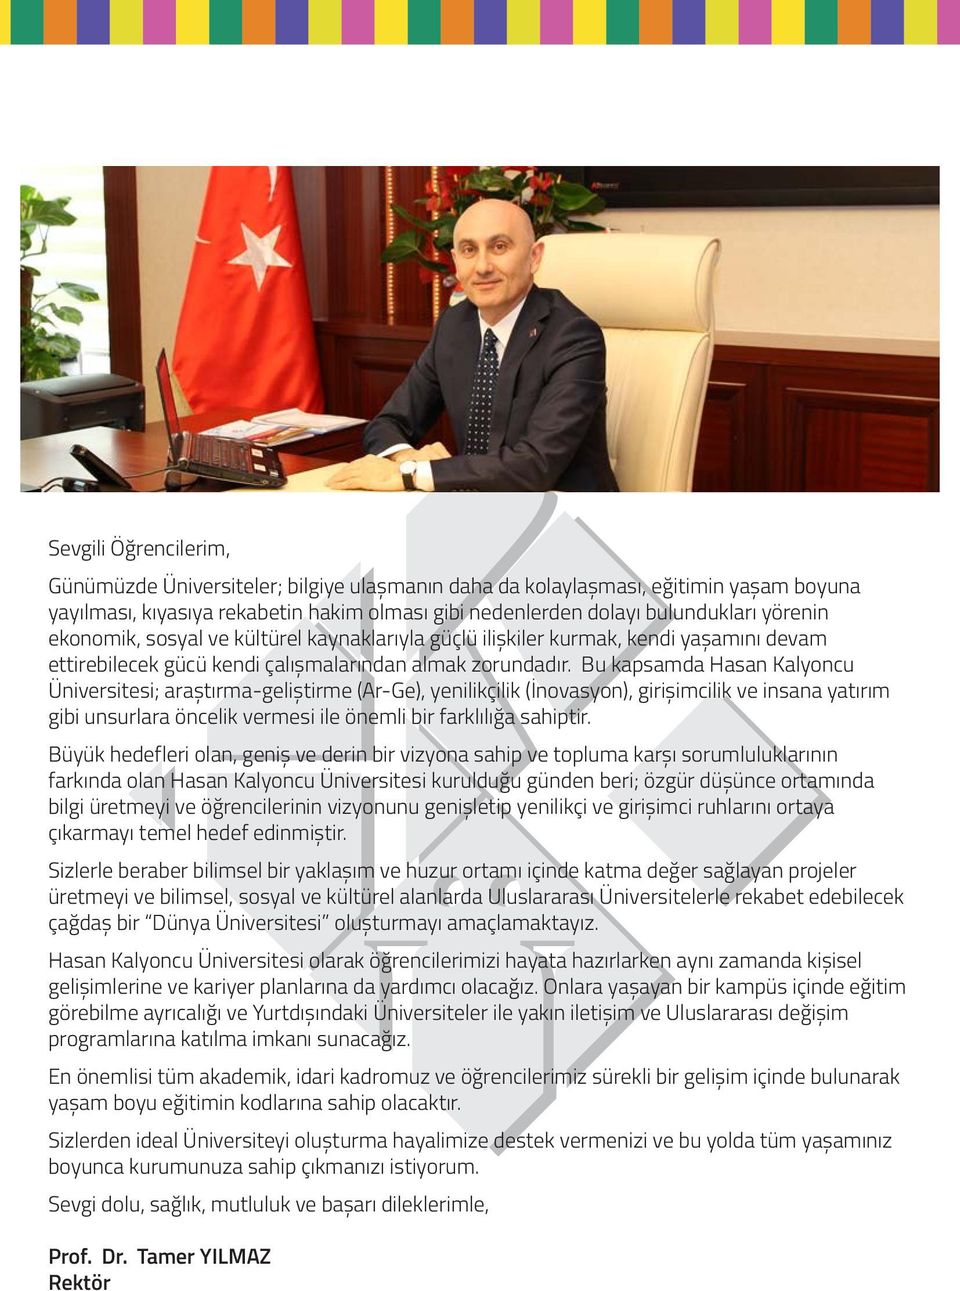 Bu kapsamda Hasan Kalyoncu Üniversitesi; araştırma-geliştirme (Ar-Ge), yenilikçilik (İnovasyon), girişimcilik ve insana yatırım gibi unsurlara öncelik vermesi ile önemli bir farklılığa sahiptir.